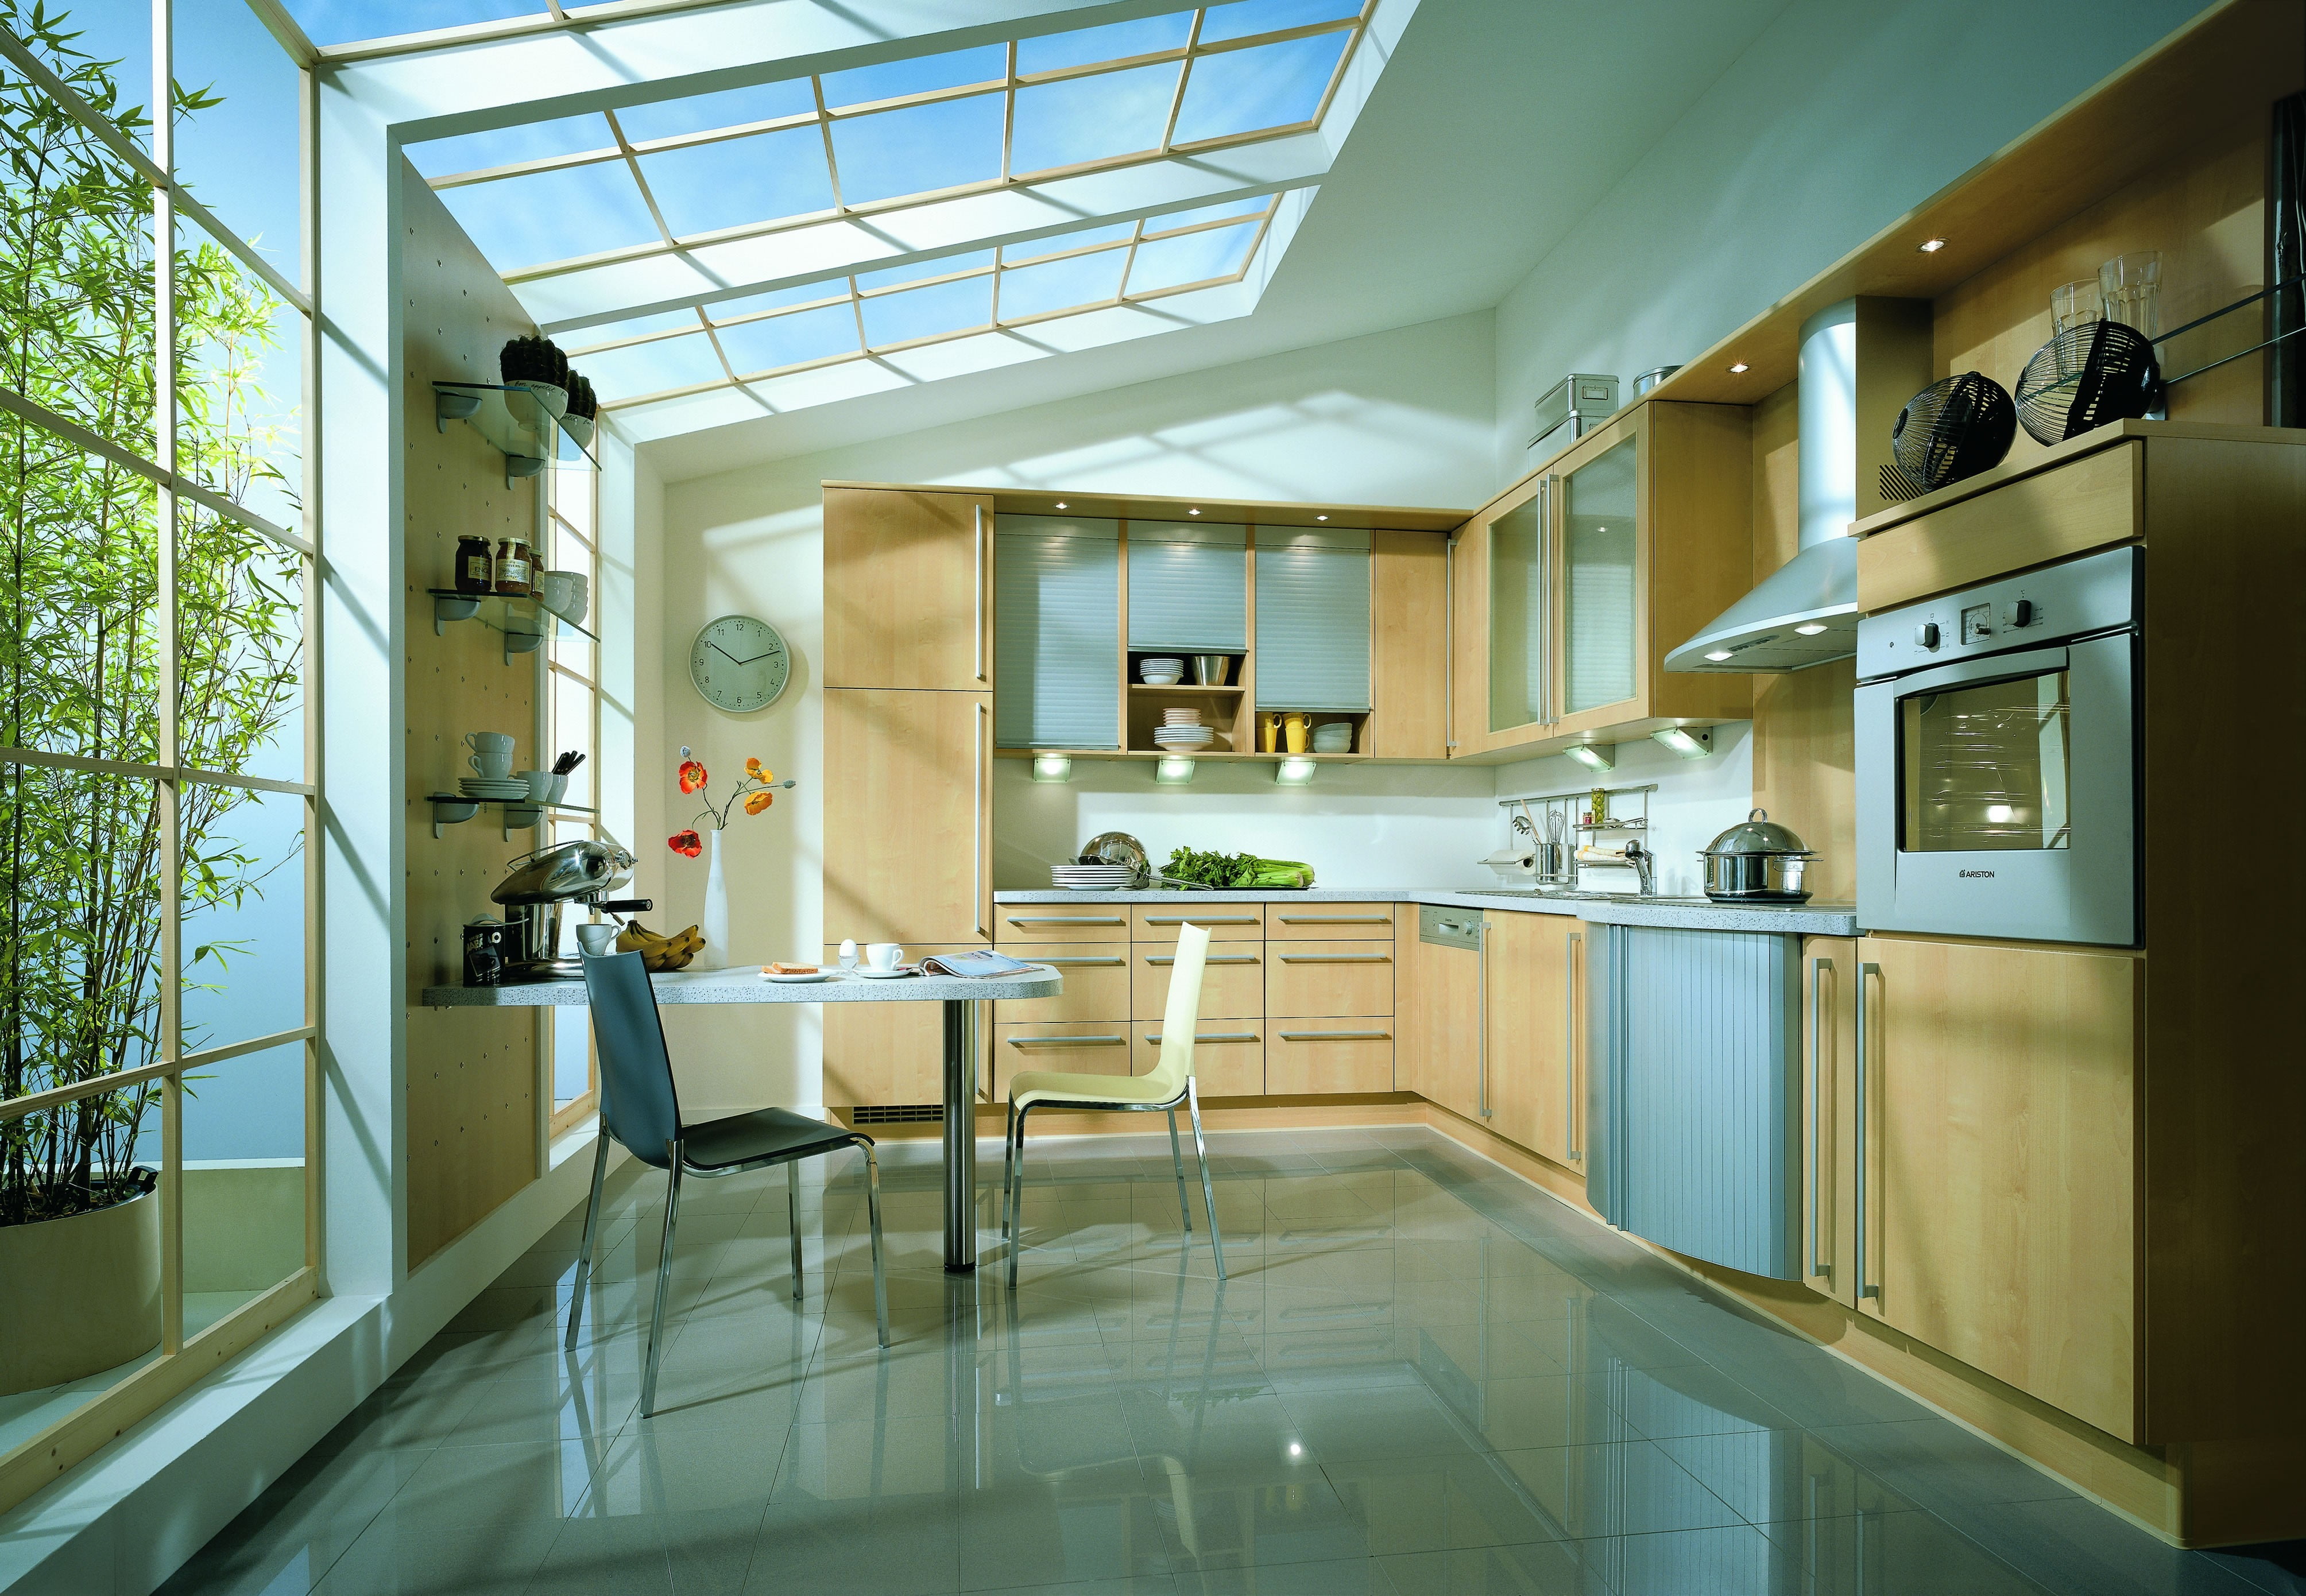 white and brown wooden kitchen cabinet, kitchen, interior, interior design